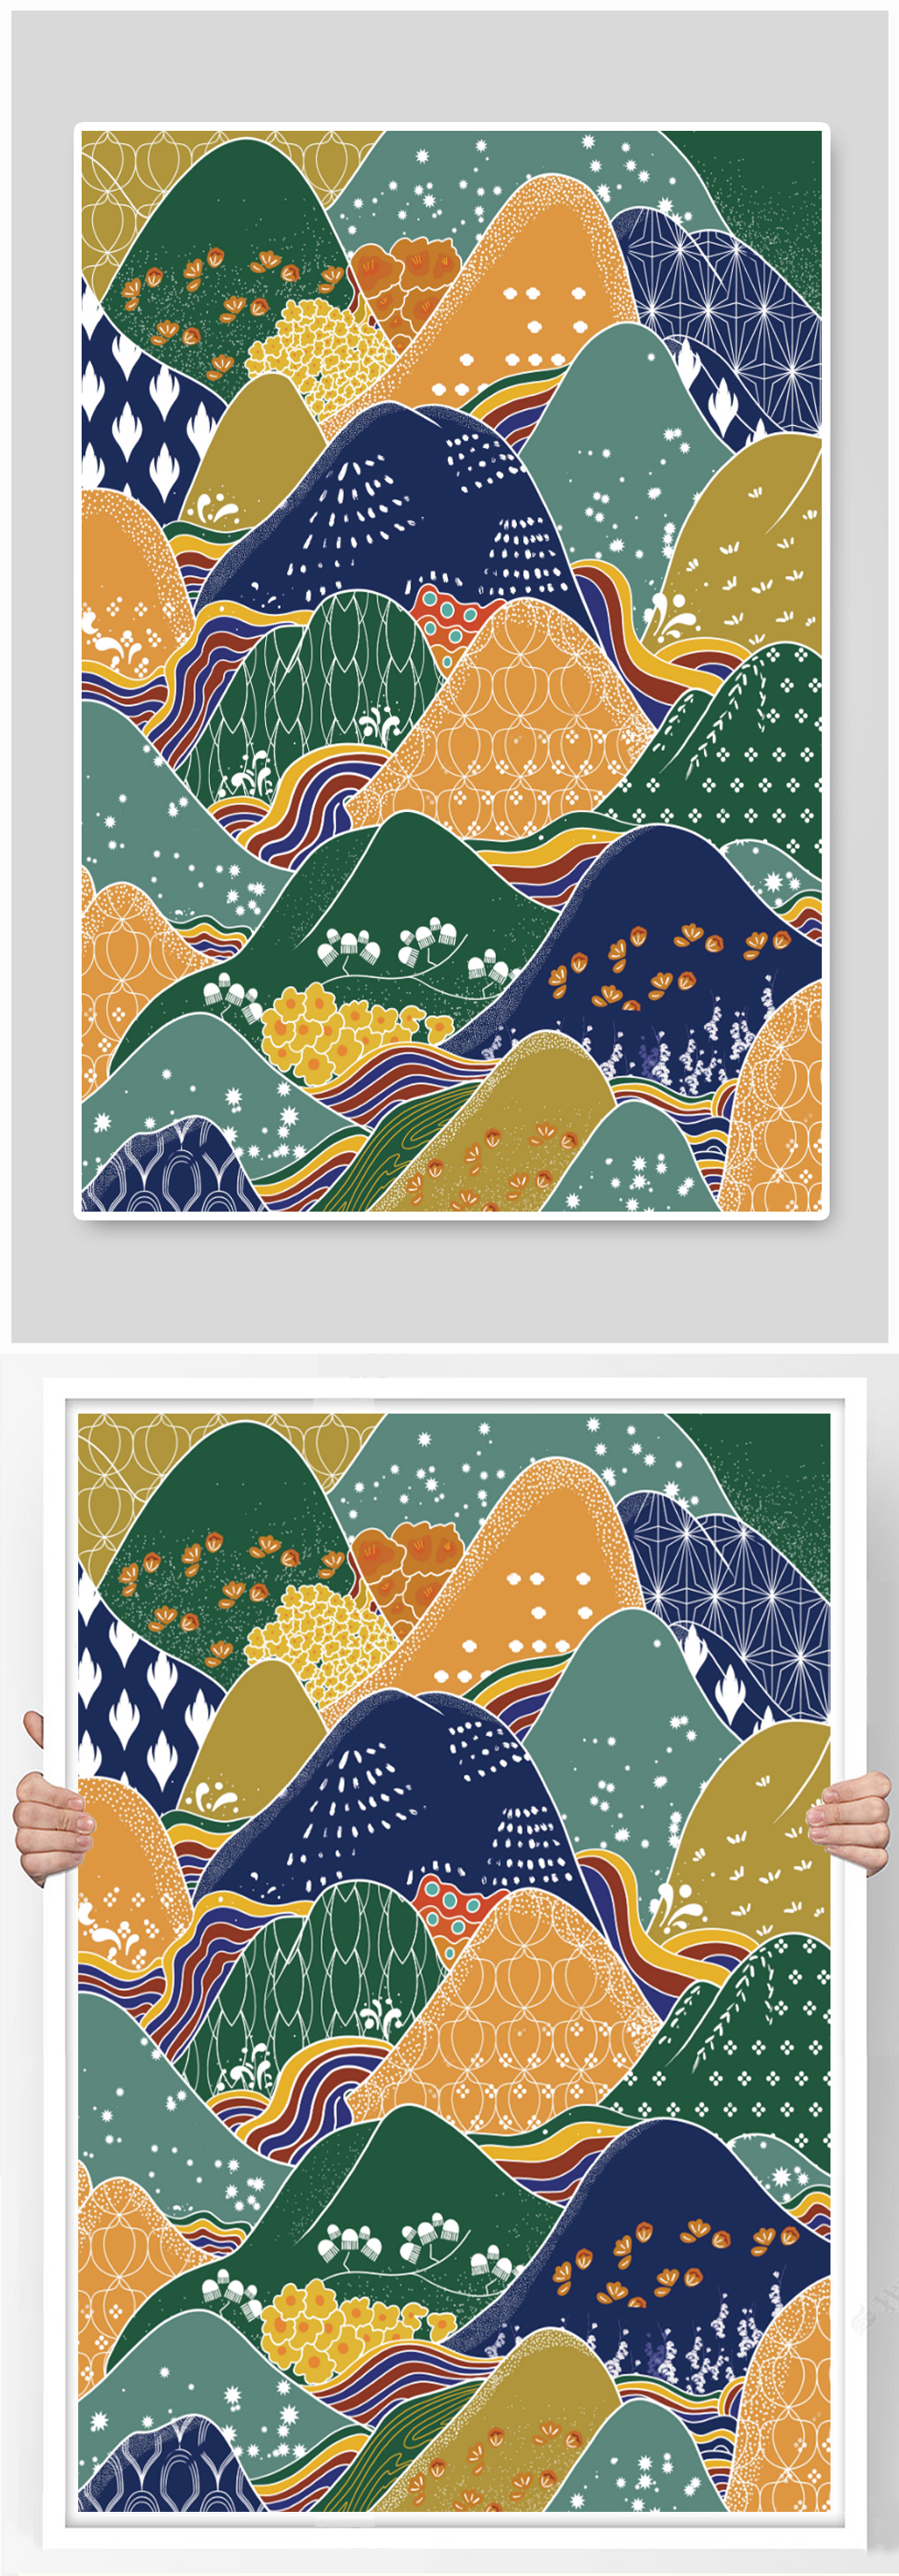 山与山川多彩纹样插画海报